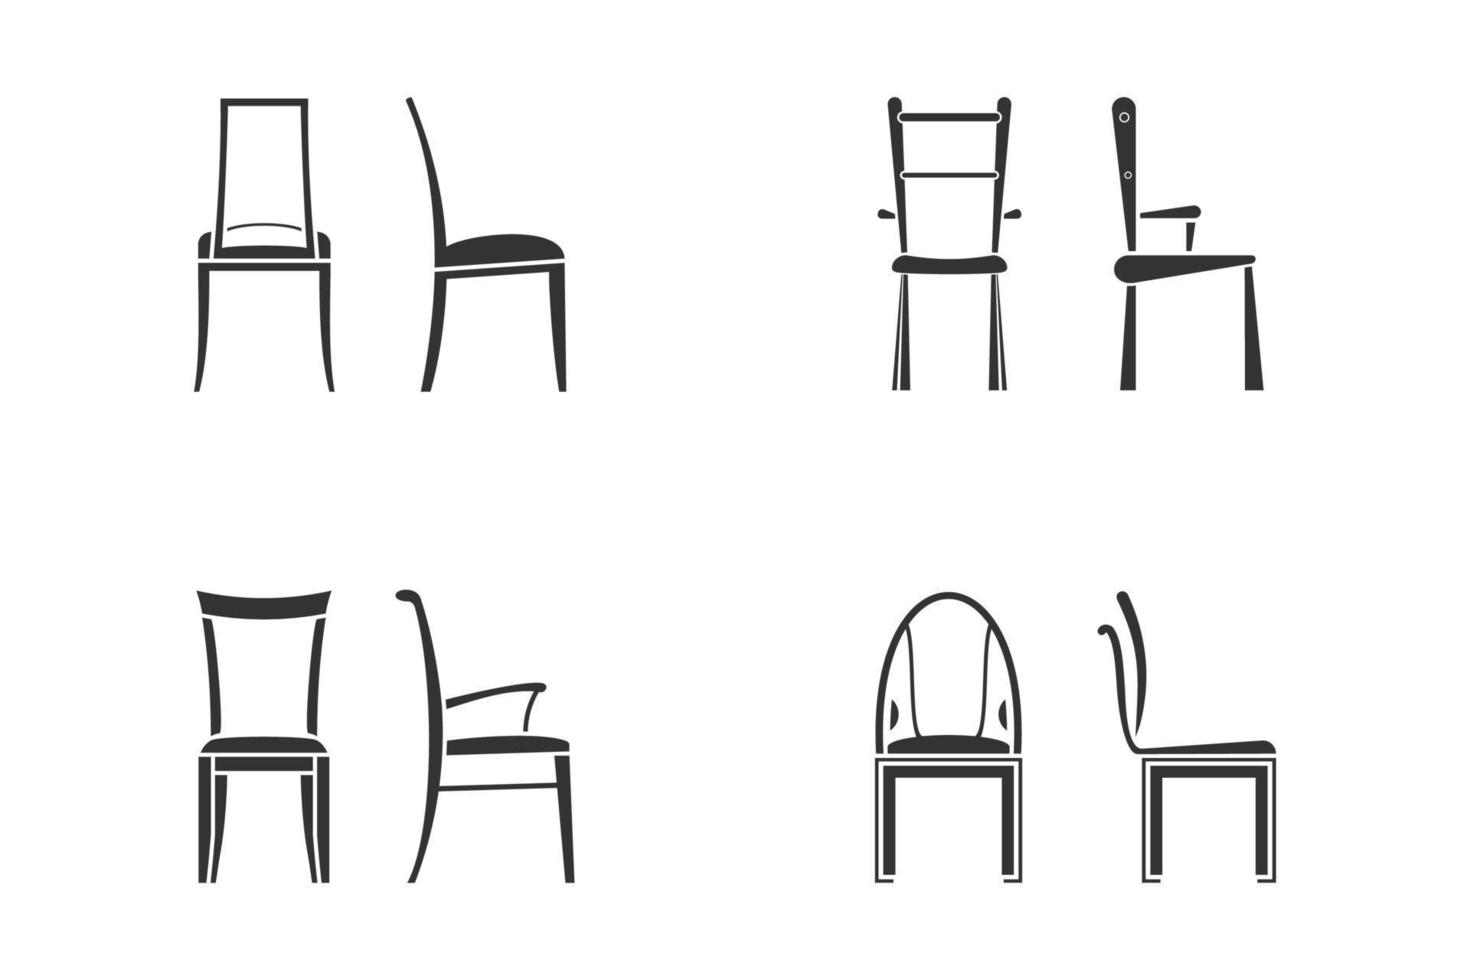 zwart-wit stoel icon set voor keuken kamer. vooraanzicht en zijaanzicht van  verschillende stoel vlakke stijl, vectorillustratie 8383924 Vectorkunst bij  Vecteezy